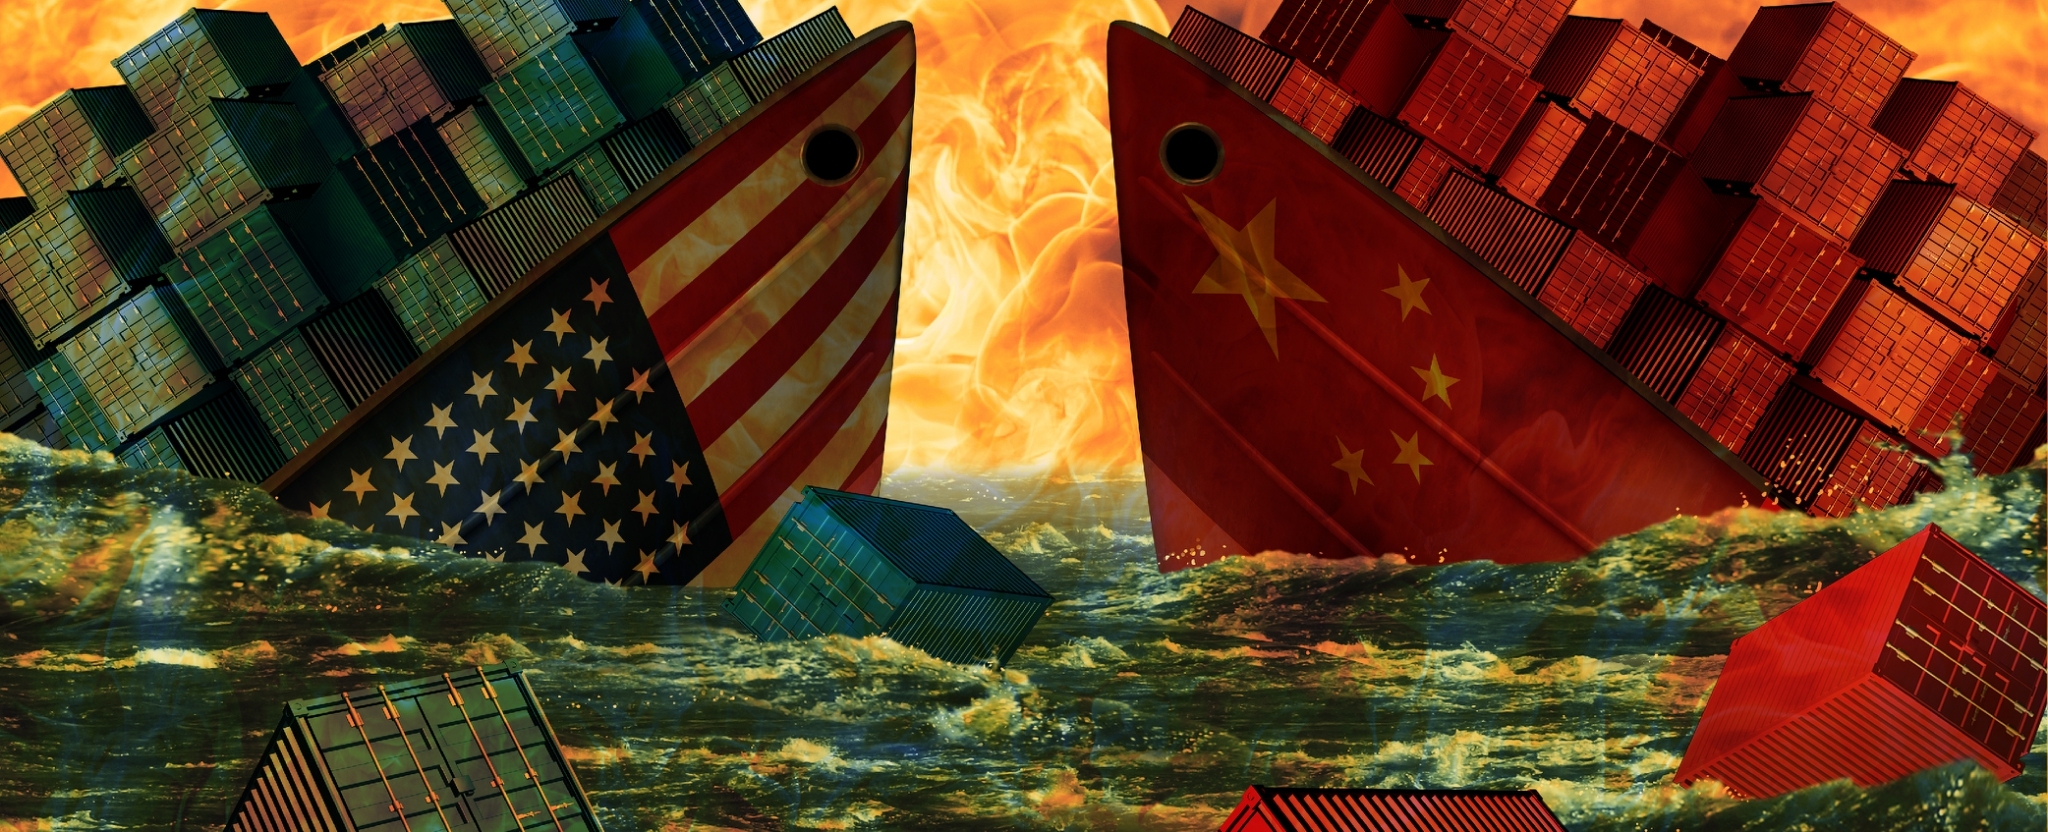 สหรัฐฯ ประกาศห้ามดำเนินธุรกิจกับ 8 บริษัทจีน